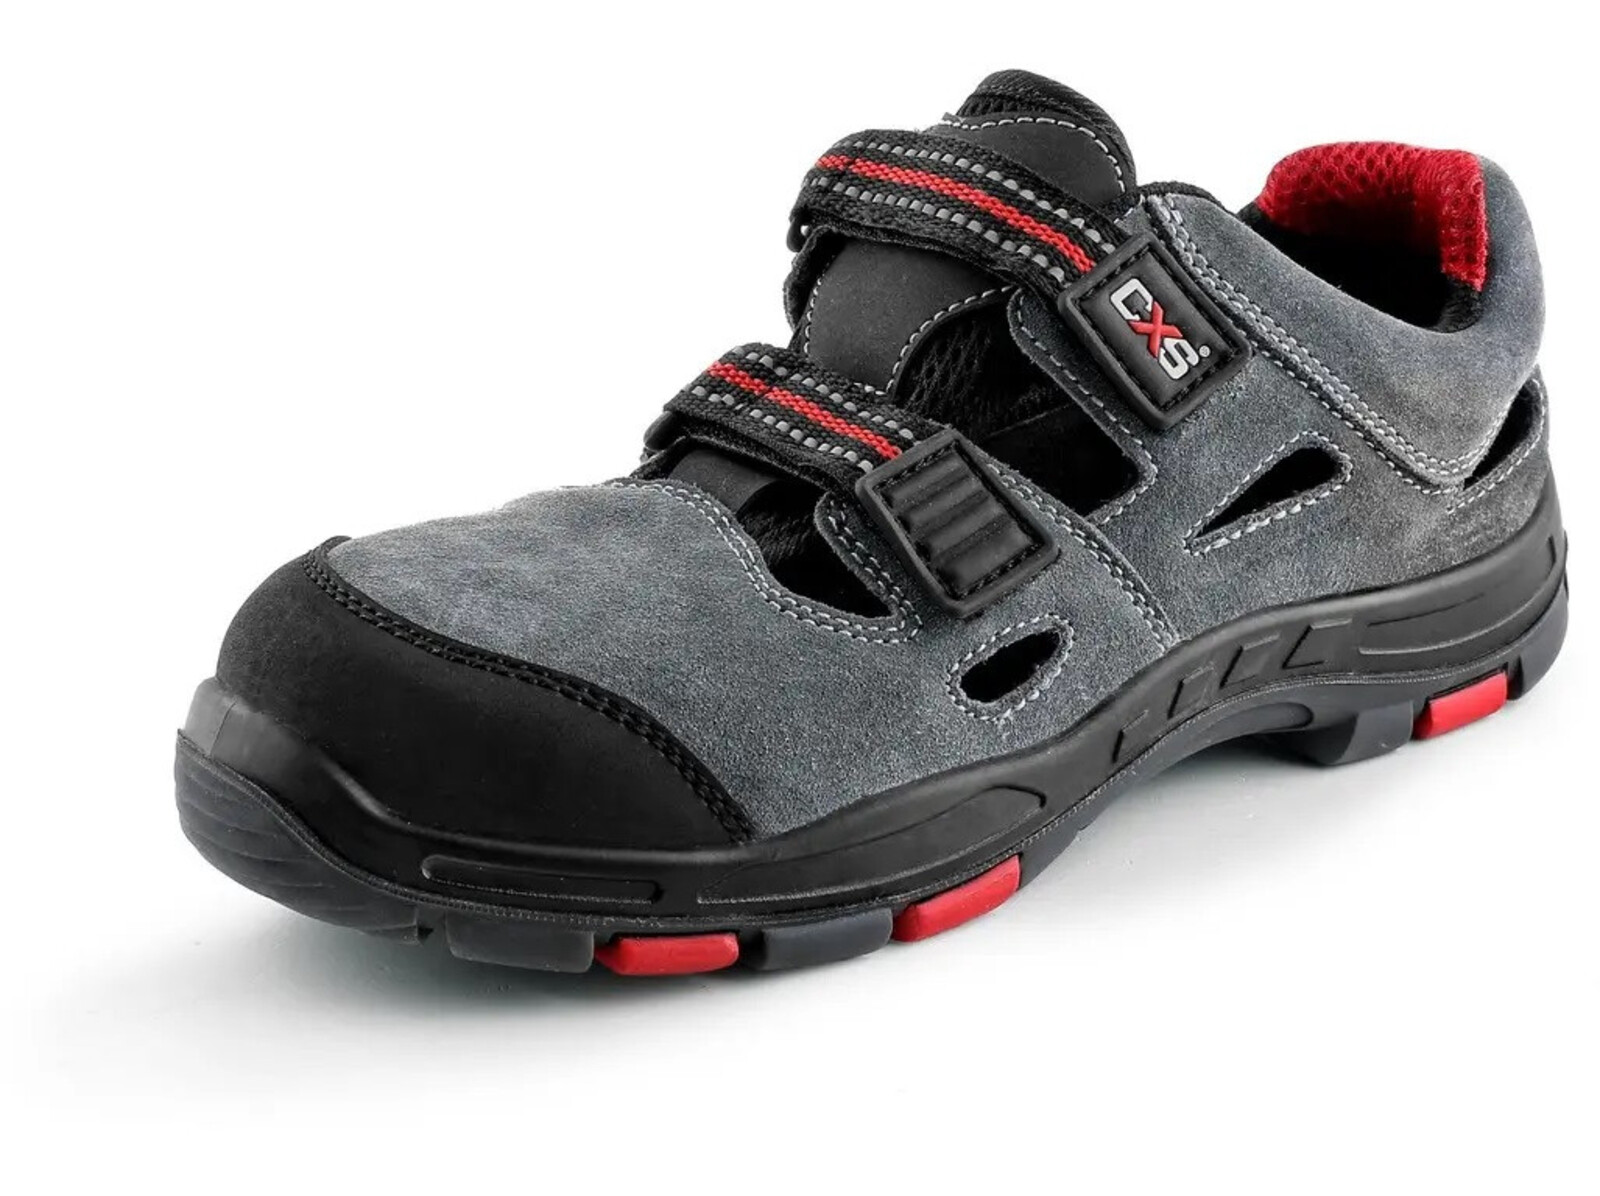 Pracovné sandále CXS Rock Phyllite O1 FO HRO SRA MF - veľkosť: 40, farba: sivá/červená